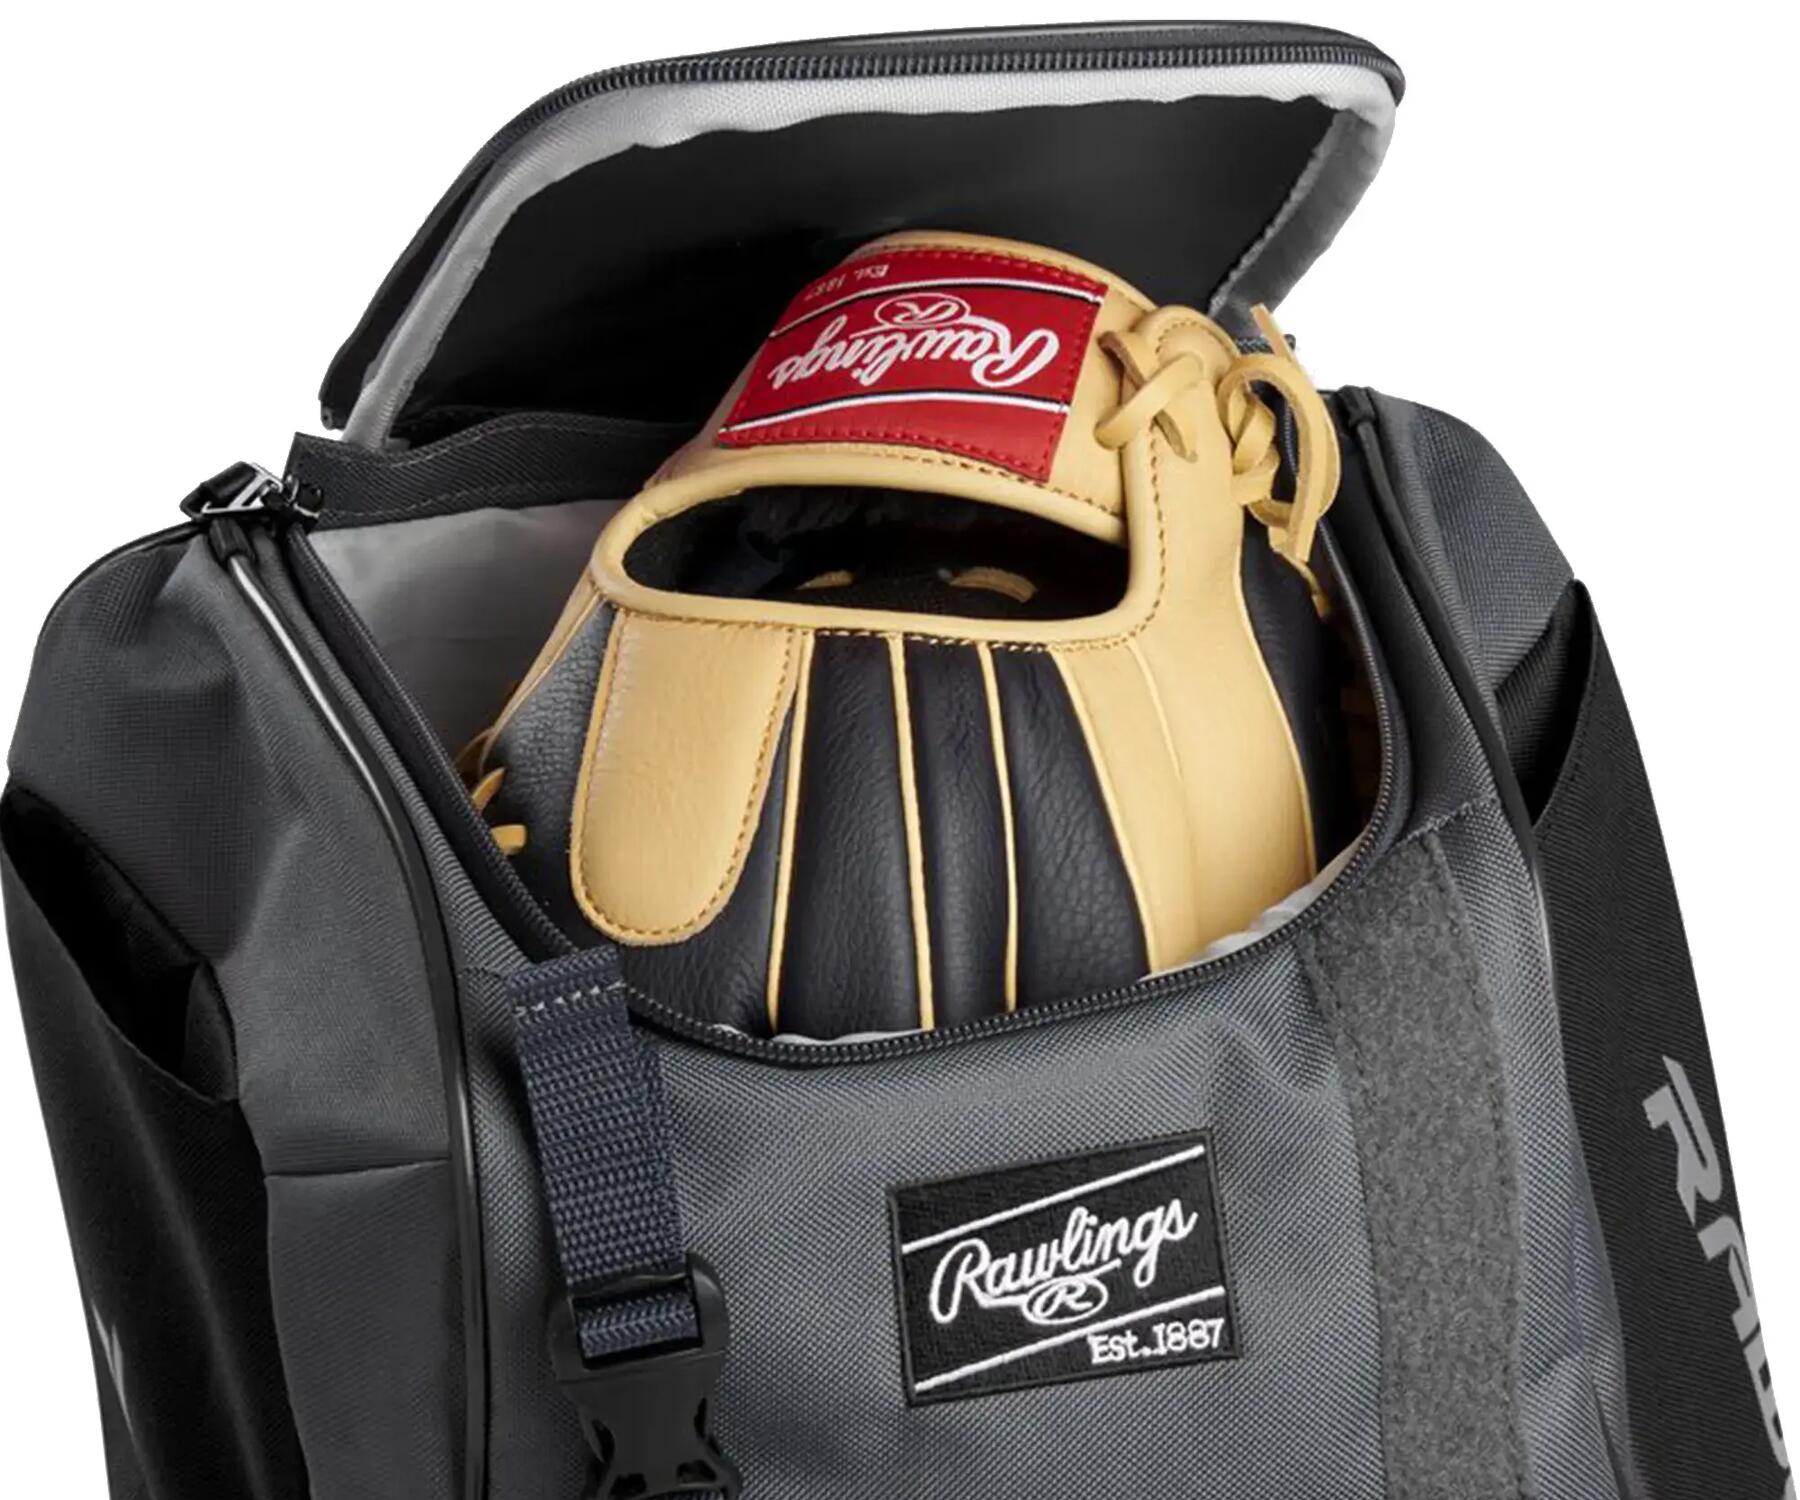 a baseball bag